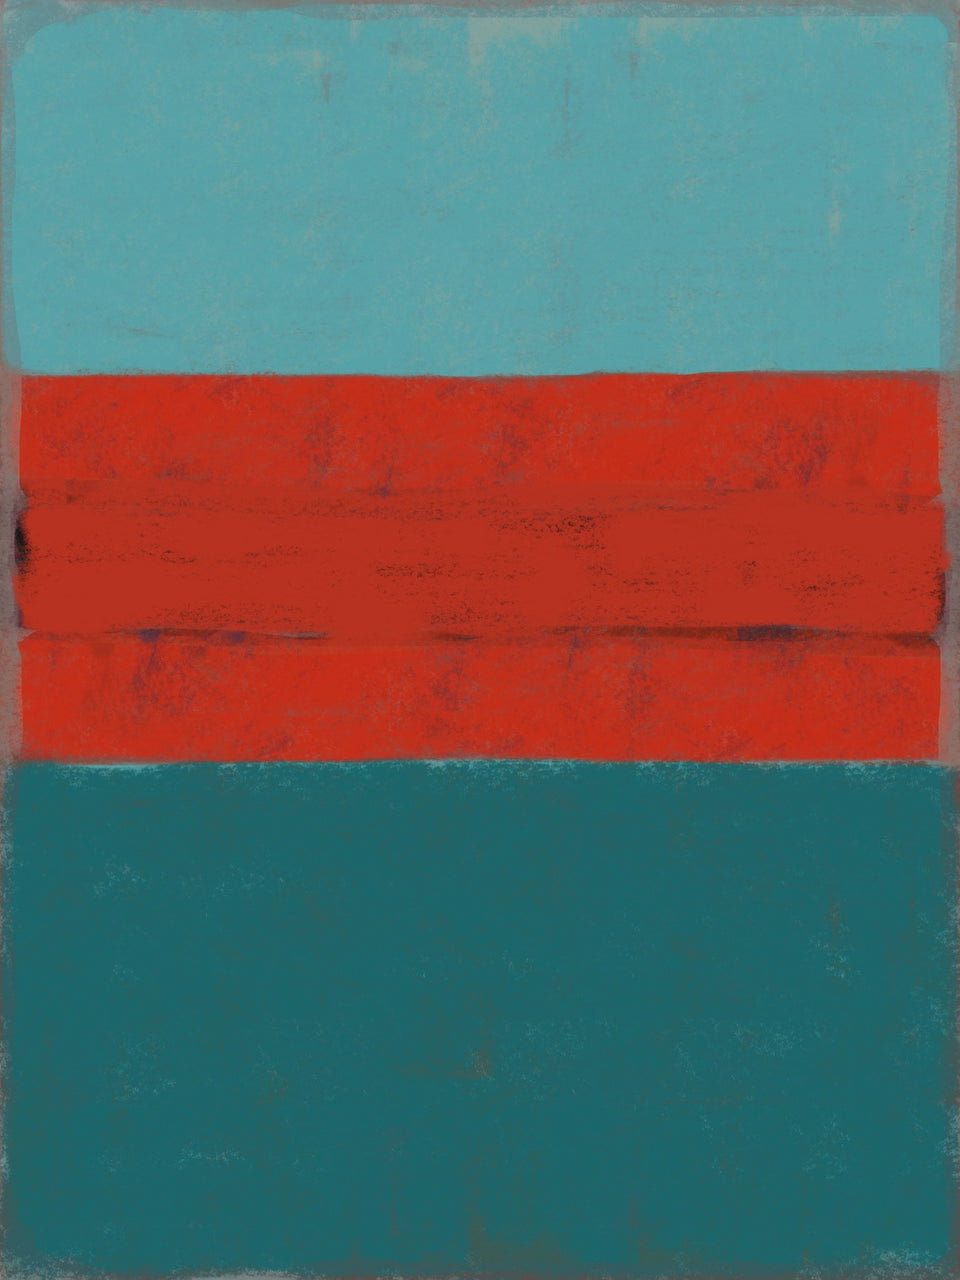  Couleurs Rothko de Rouge sur Bleu, - Peinture abstraite  artiste peintre Ludwig Mario  galerie TACT Art abstrait & contemporain